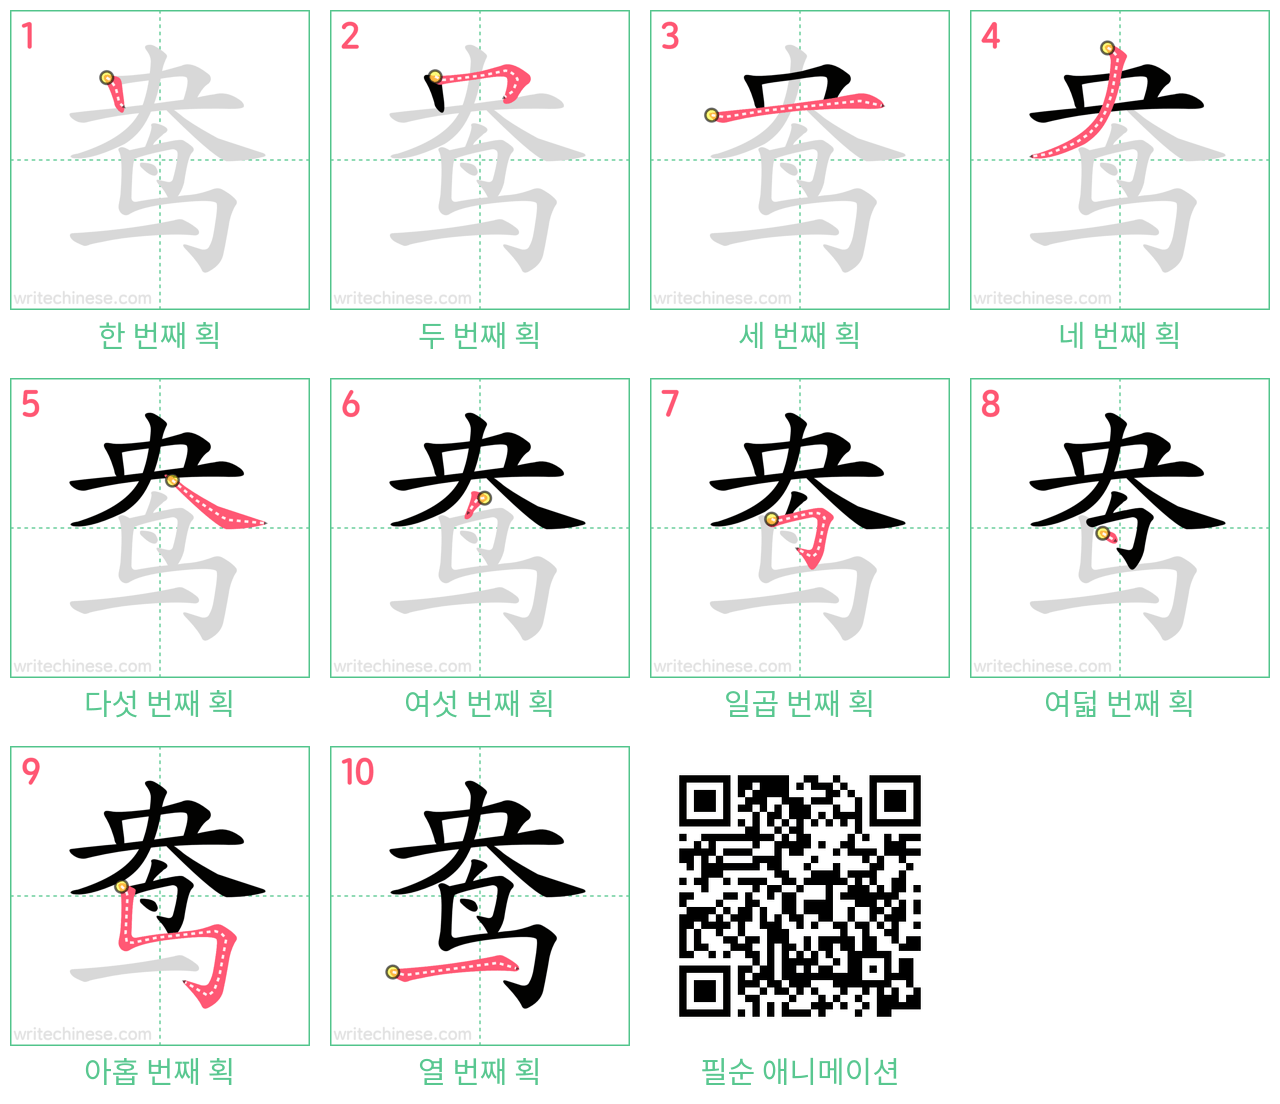 鸯 step-by-step stroke order diagrams